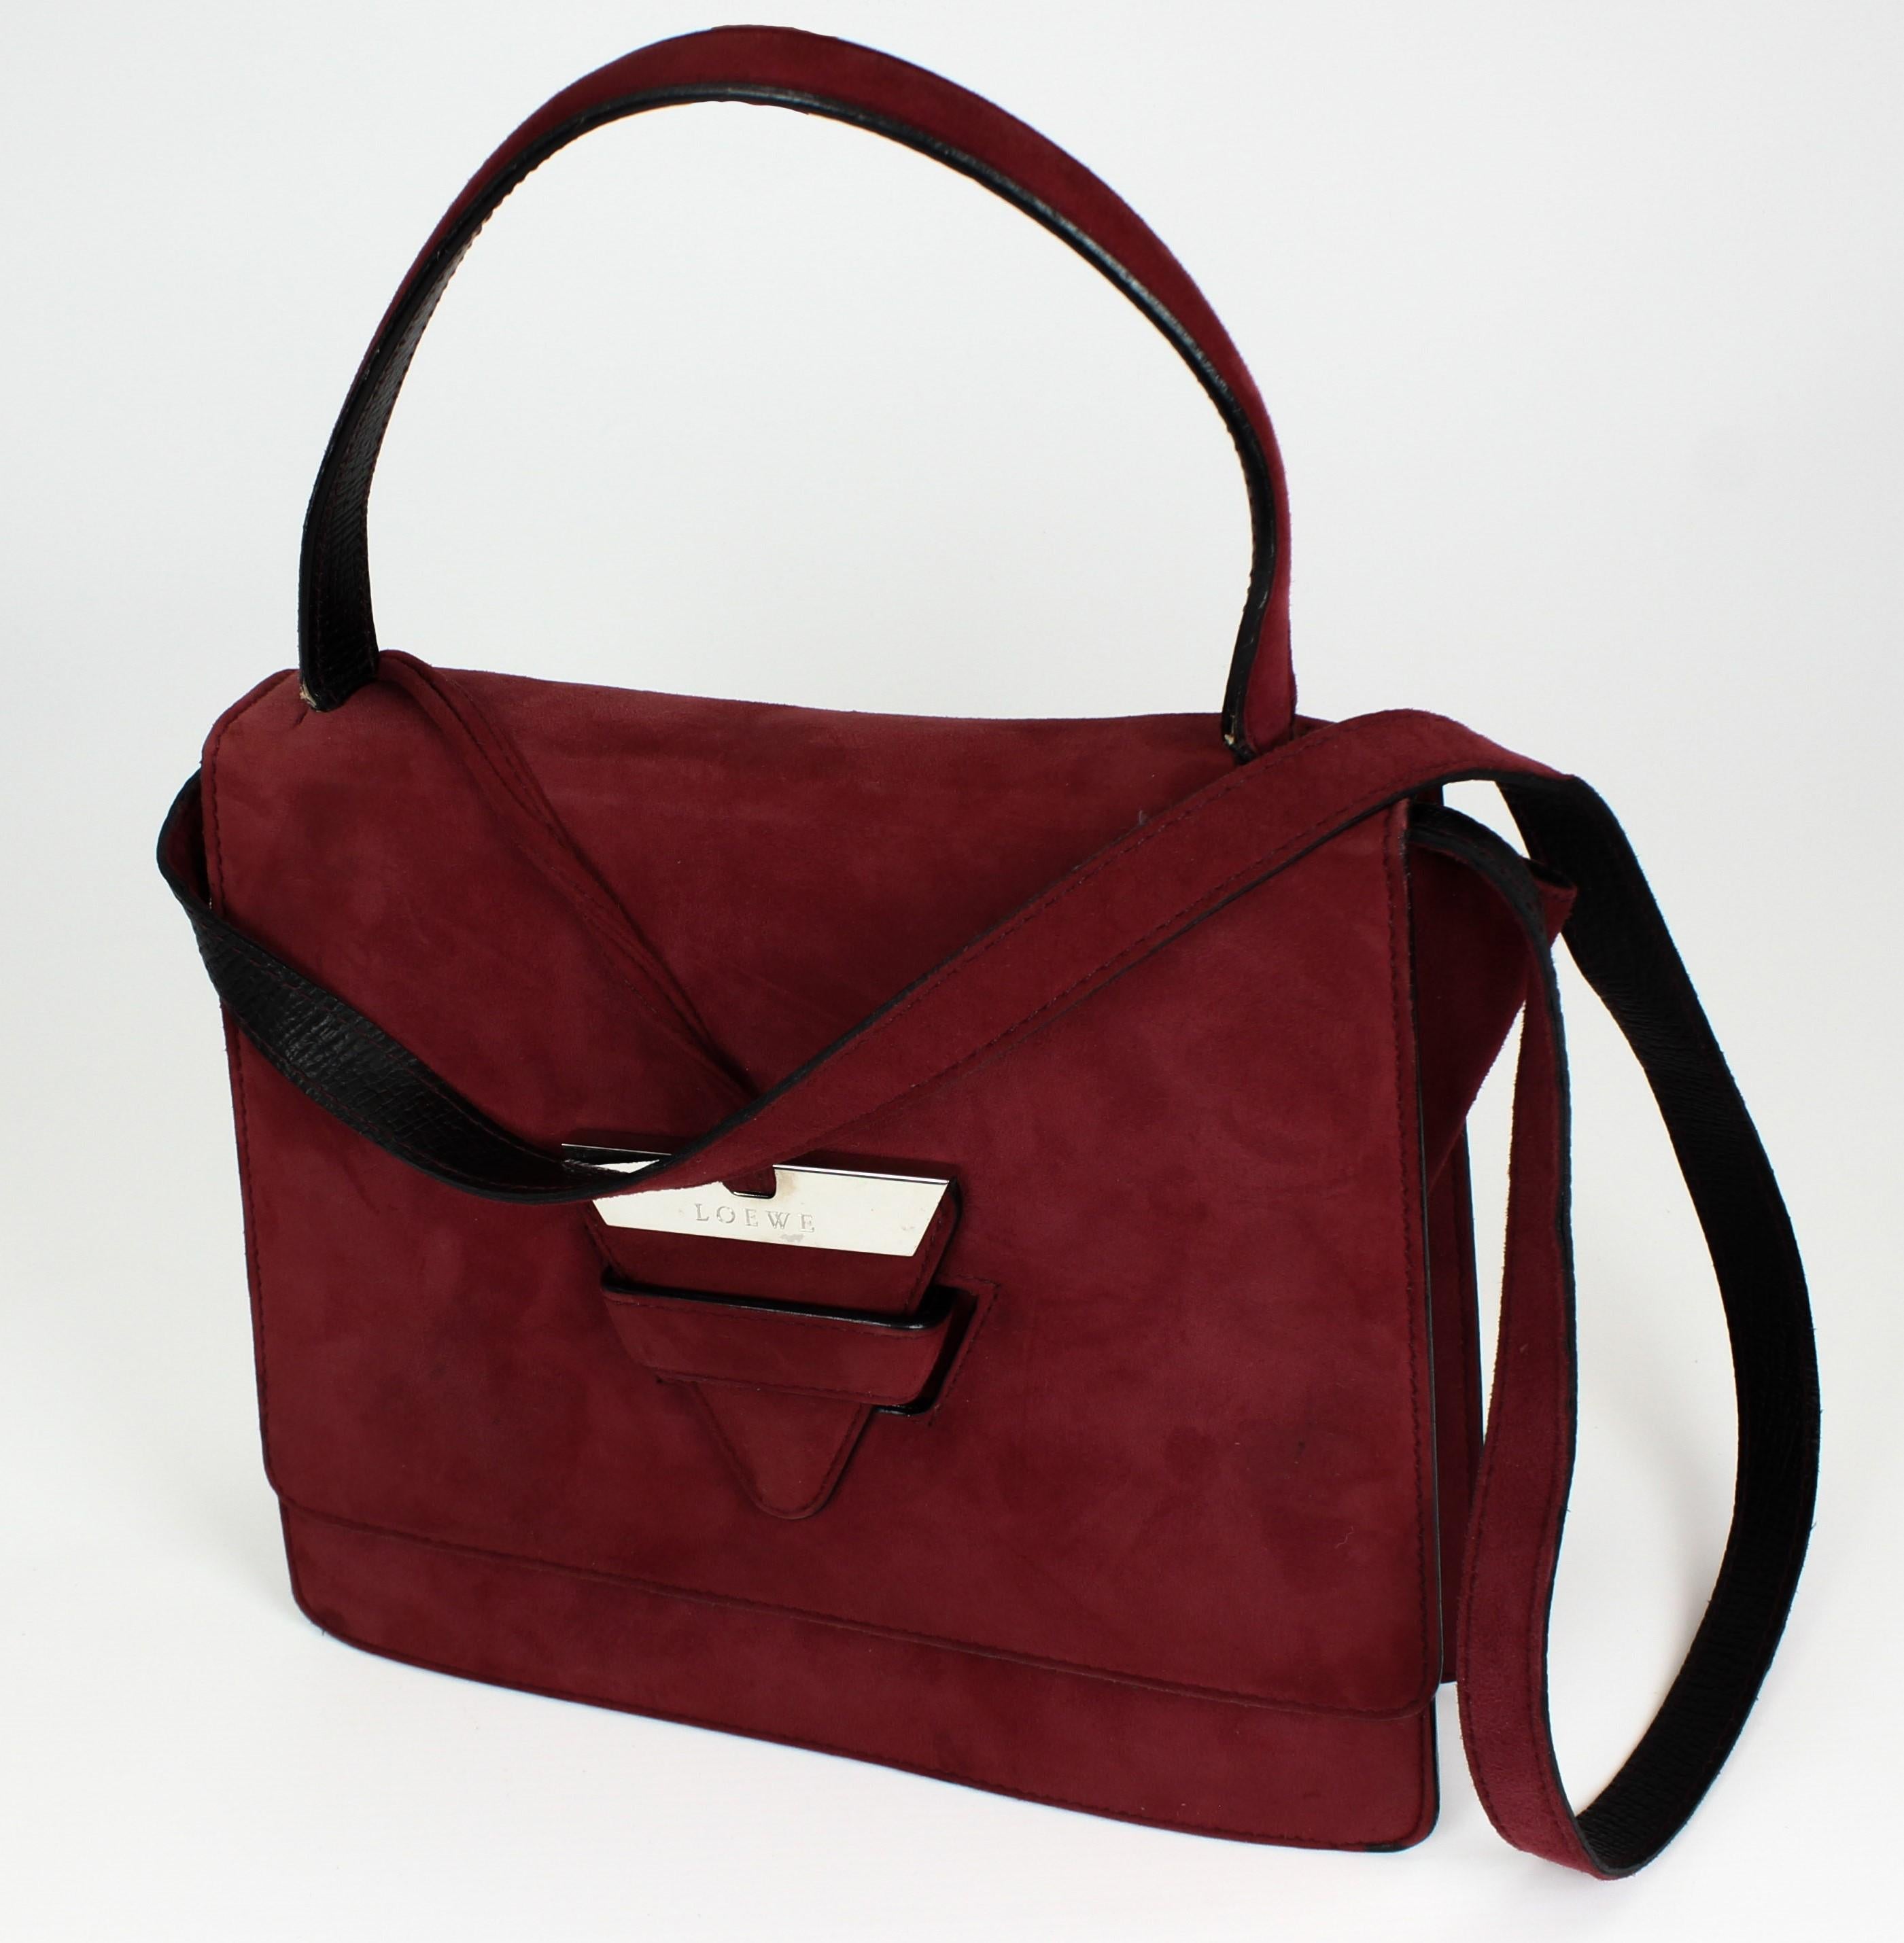 Loewe Barcelona handbag 2